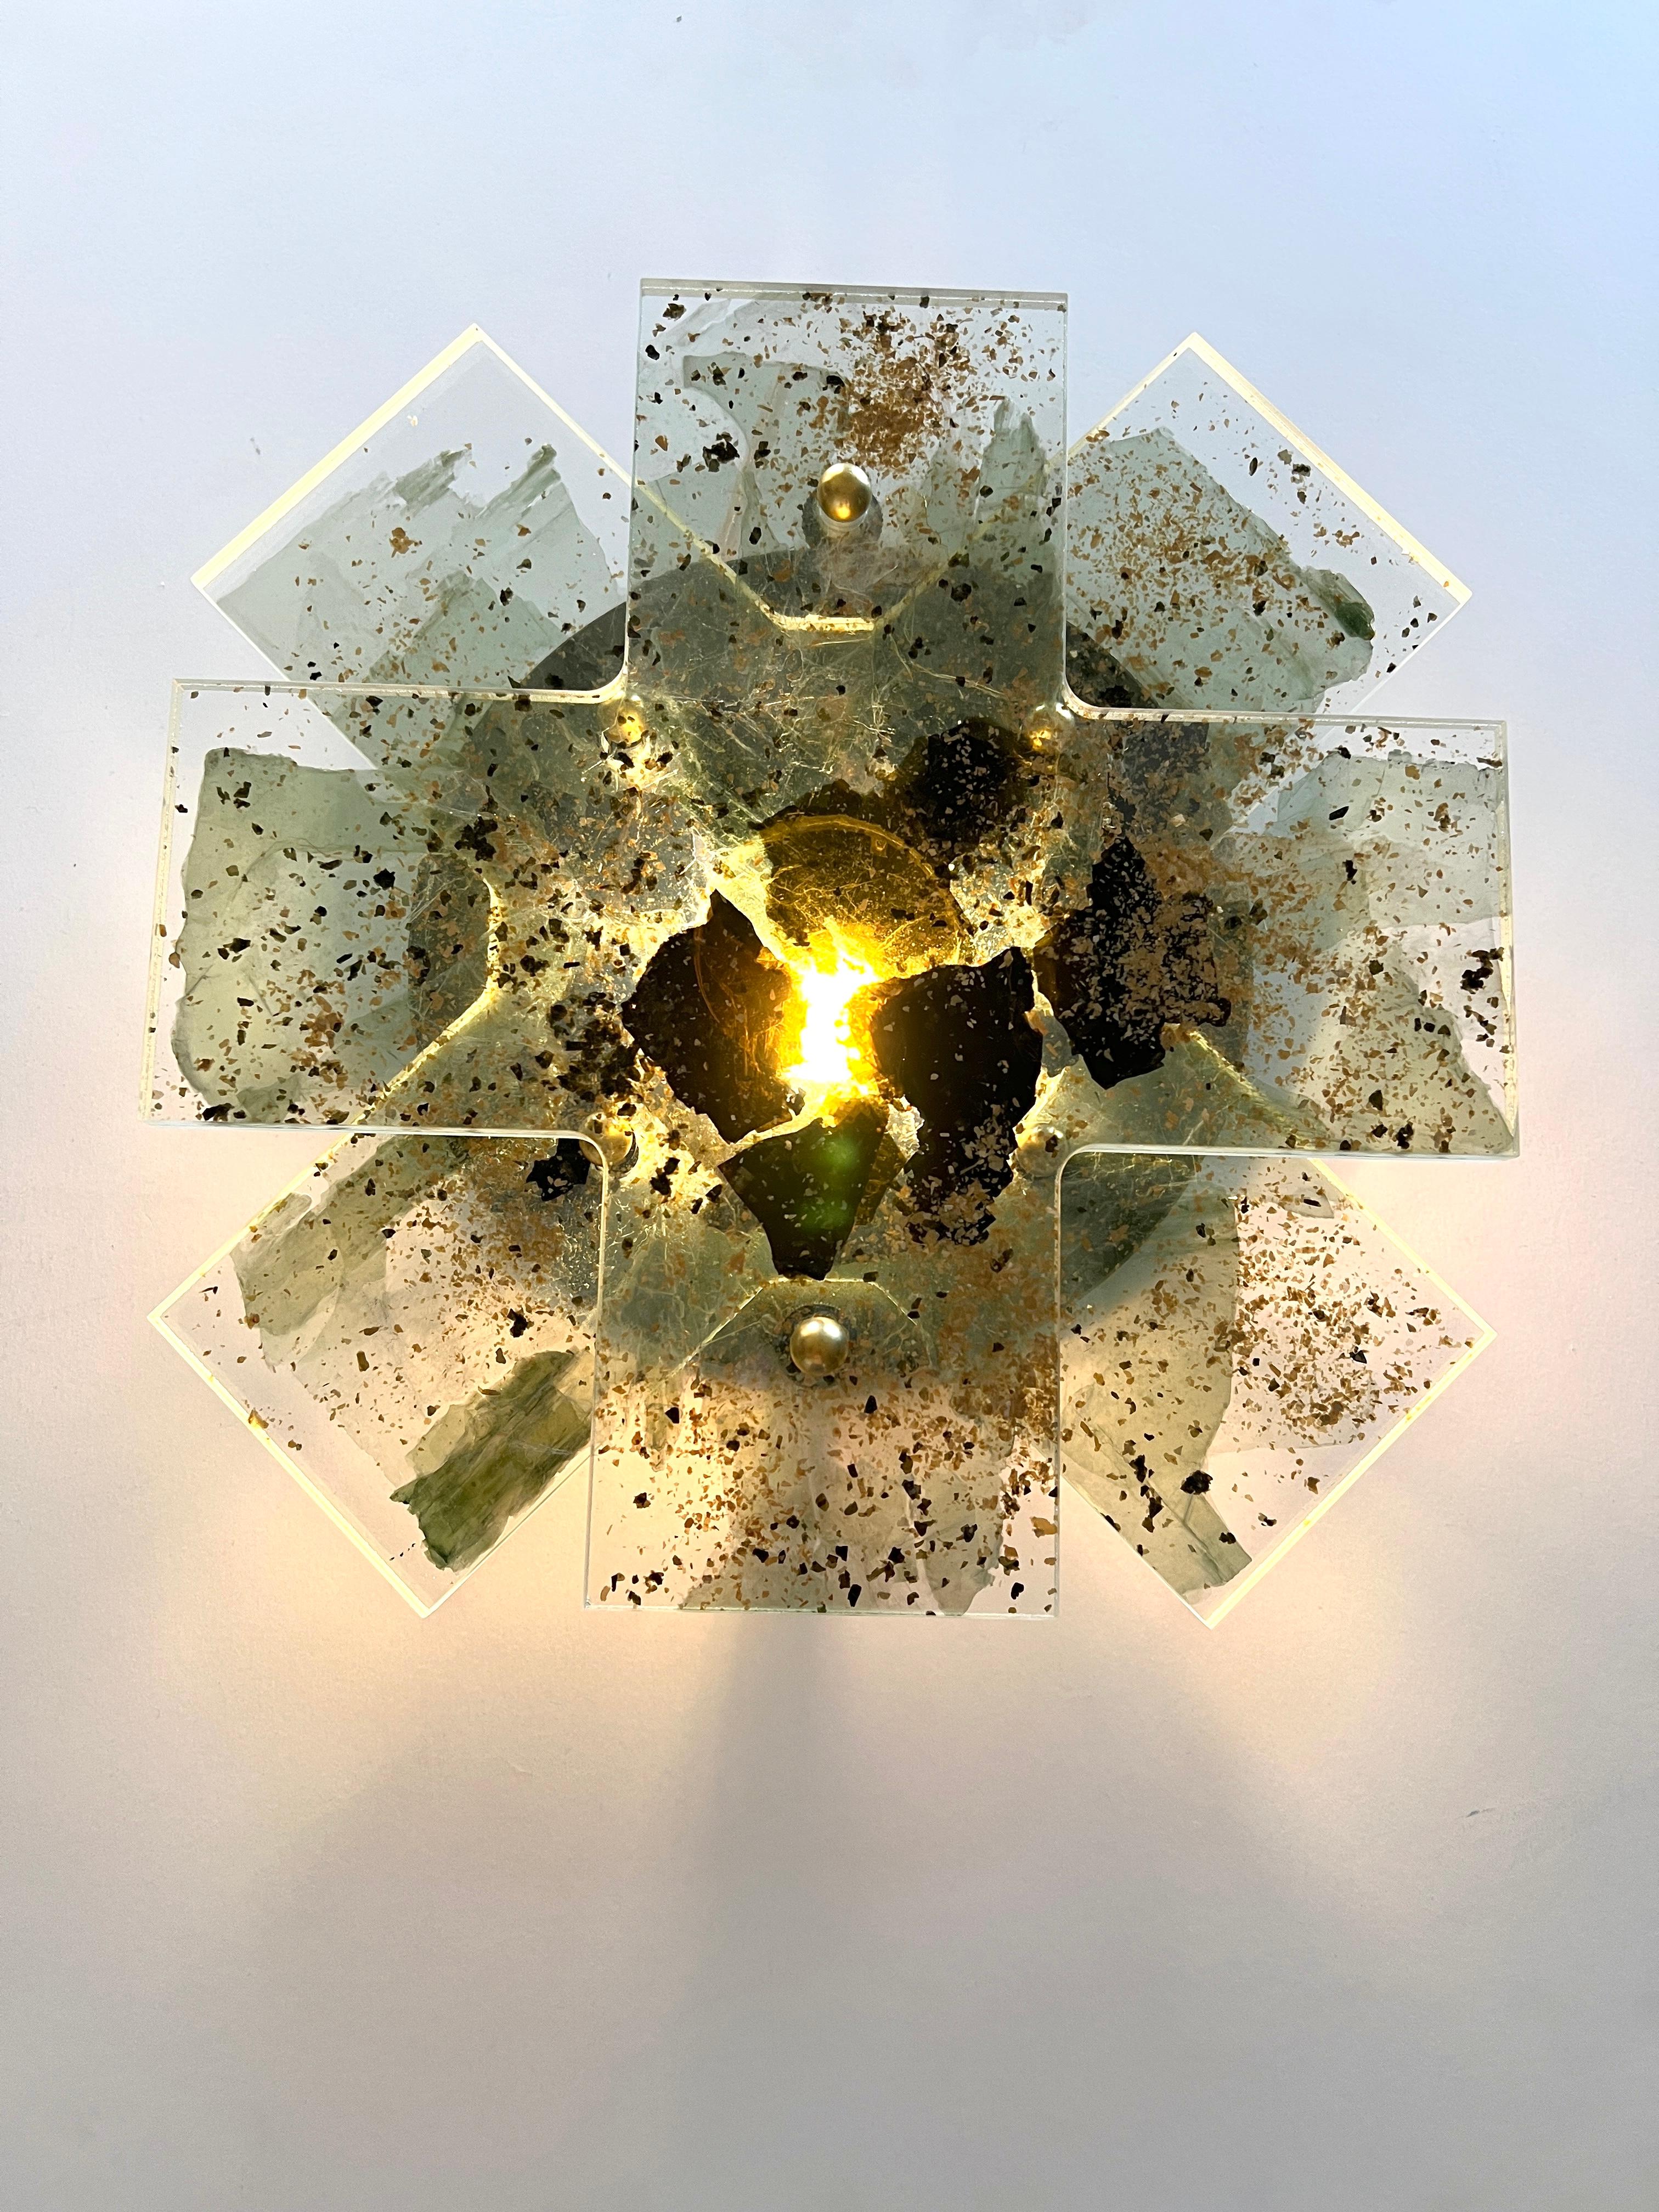 INTERMICA (NIMBUS LIGHT #1)
WANDLEUCHTER, 2023

InterMica® laminiertes Starphire-Glas mit grünen, goldenen und schwarzen Glimmerflocken, LED-Glühbirne 14 x 14 x 2,75 Zoll.

InterMica ist ein architektonisches Spezialglasprodukt, das aus sorgfältig